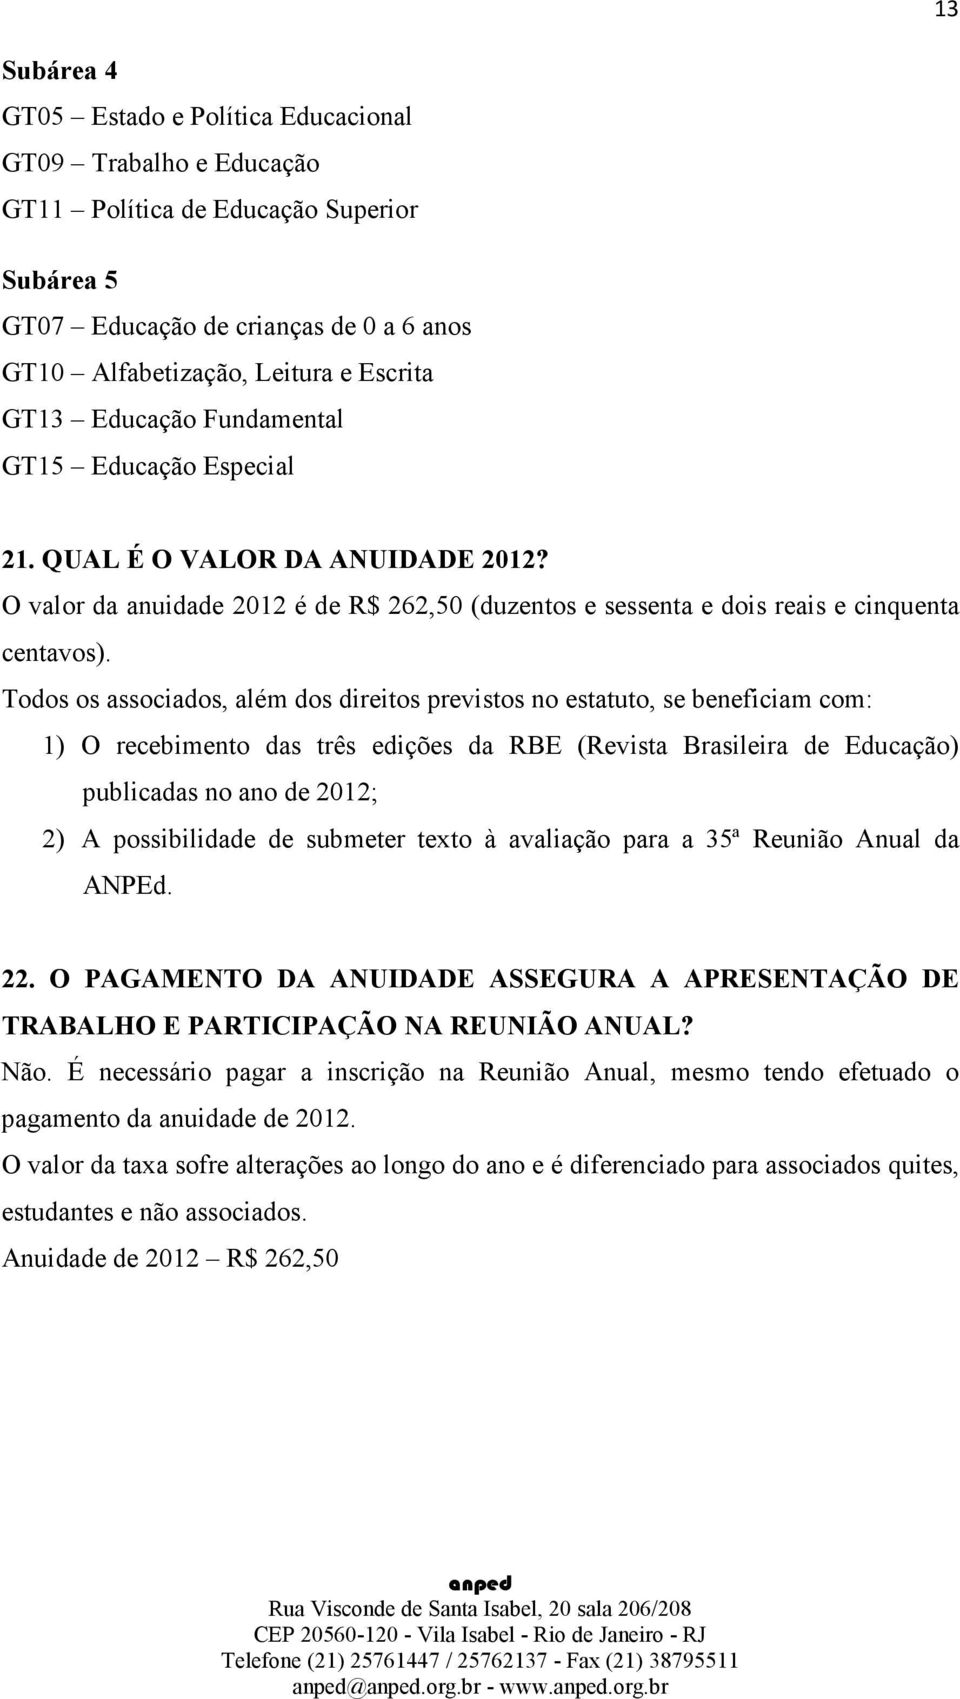 Todos os associados, além dos direitos previstos no estatuto, se beneficiam com: 1) O recebimento das três edições da RBE (Revista Brasileira de Educação) publicadas no ano de 2012; 2) A